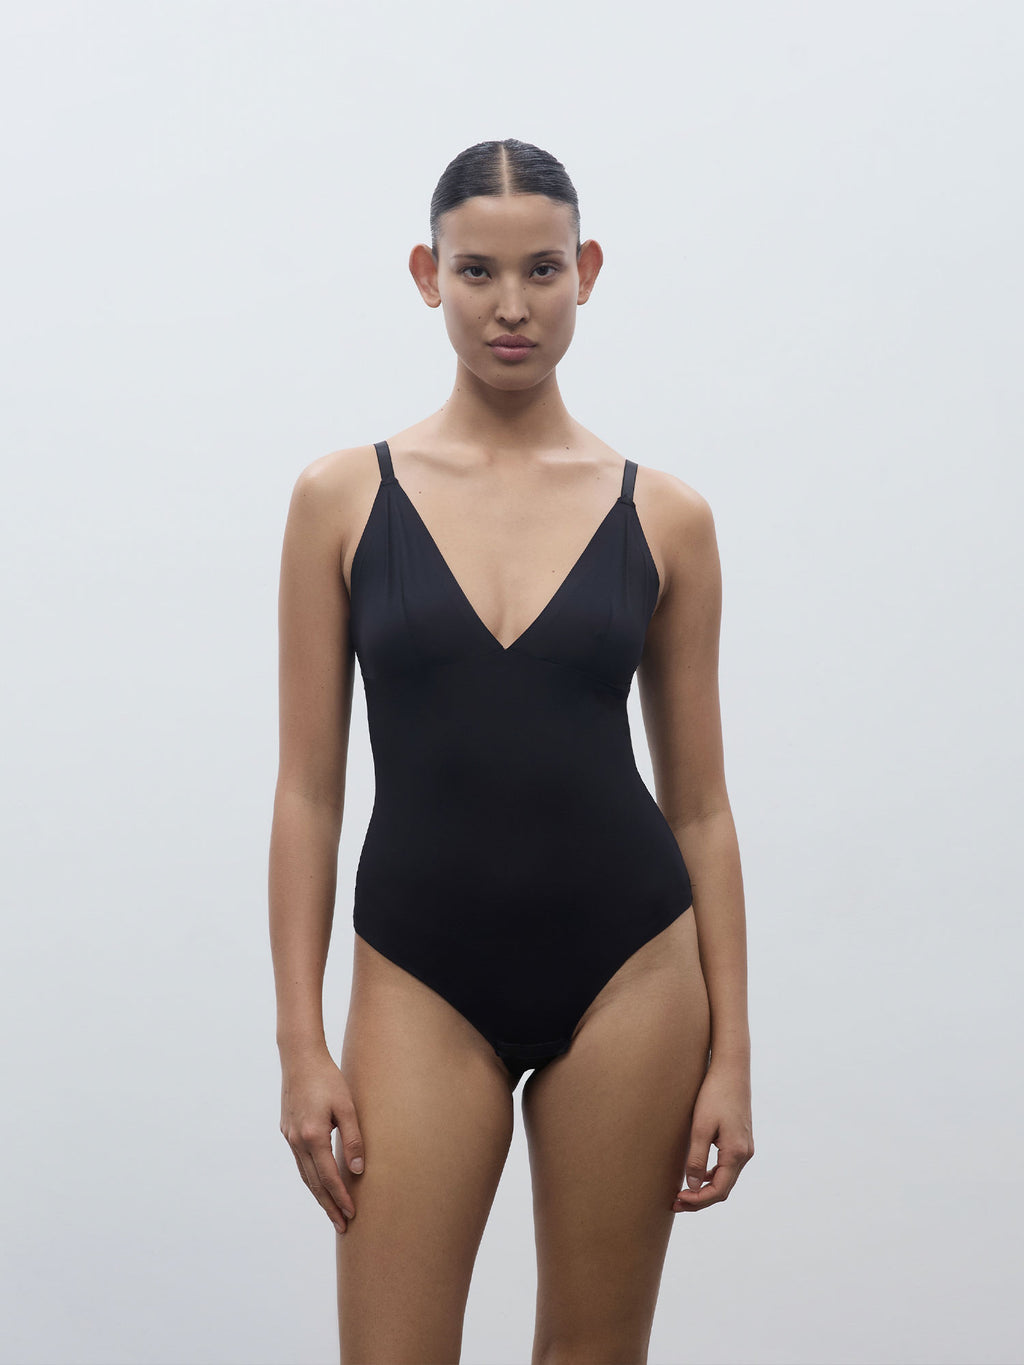 Georgia bodysuit, La Nouvelle, Women's bodysuits, Lingerie